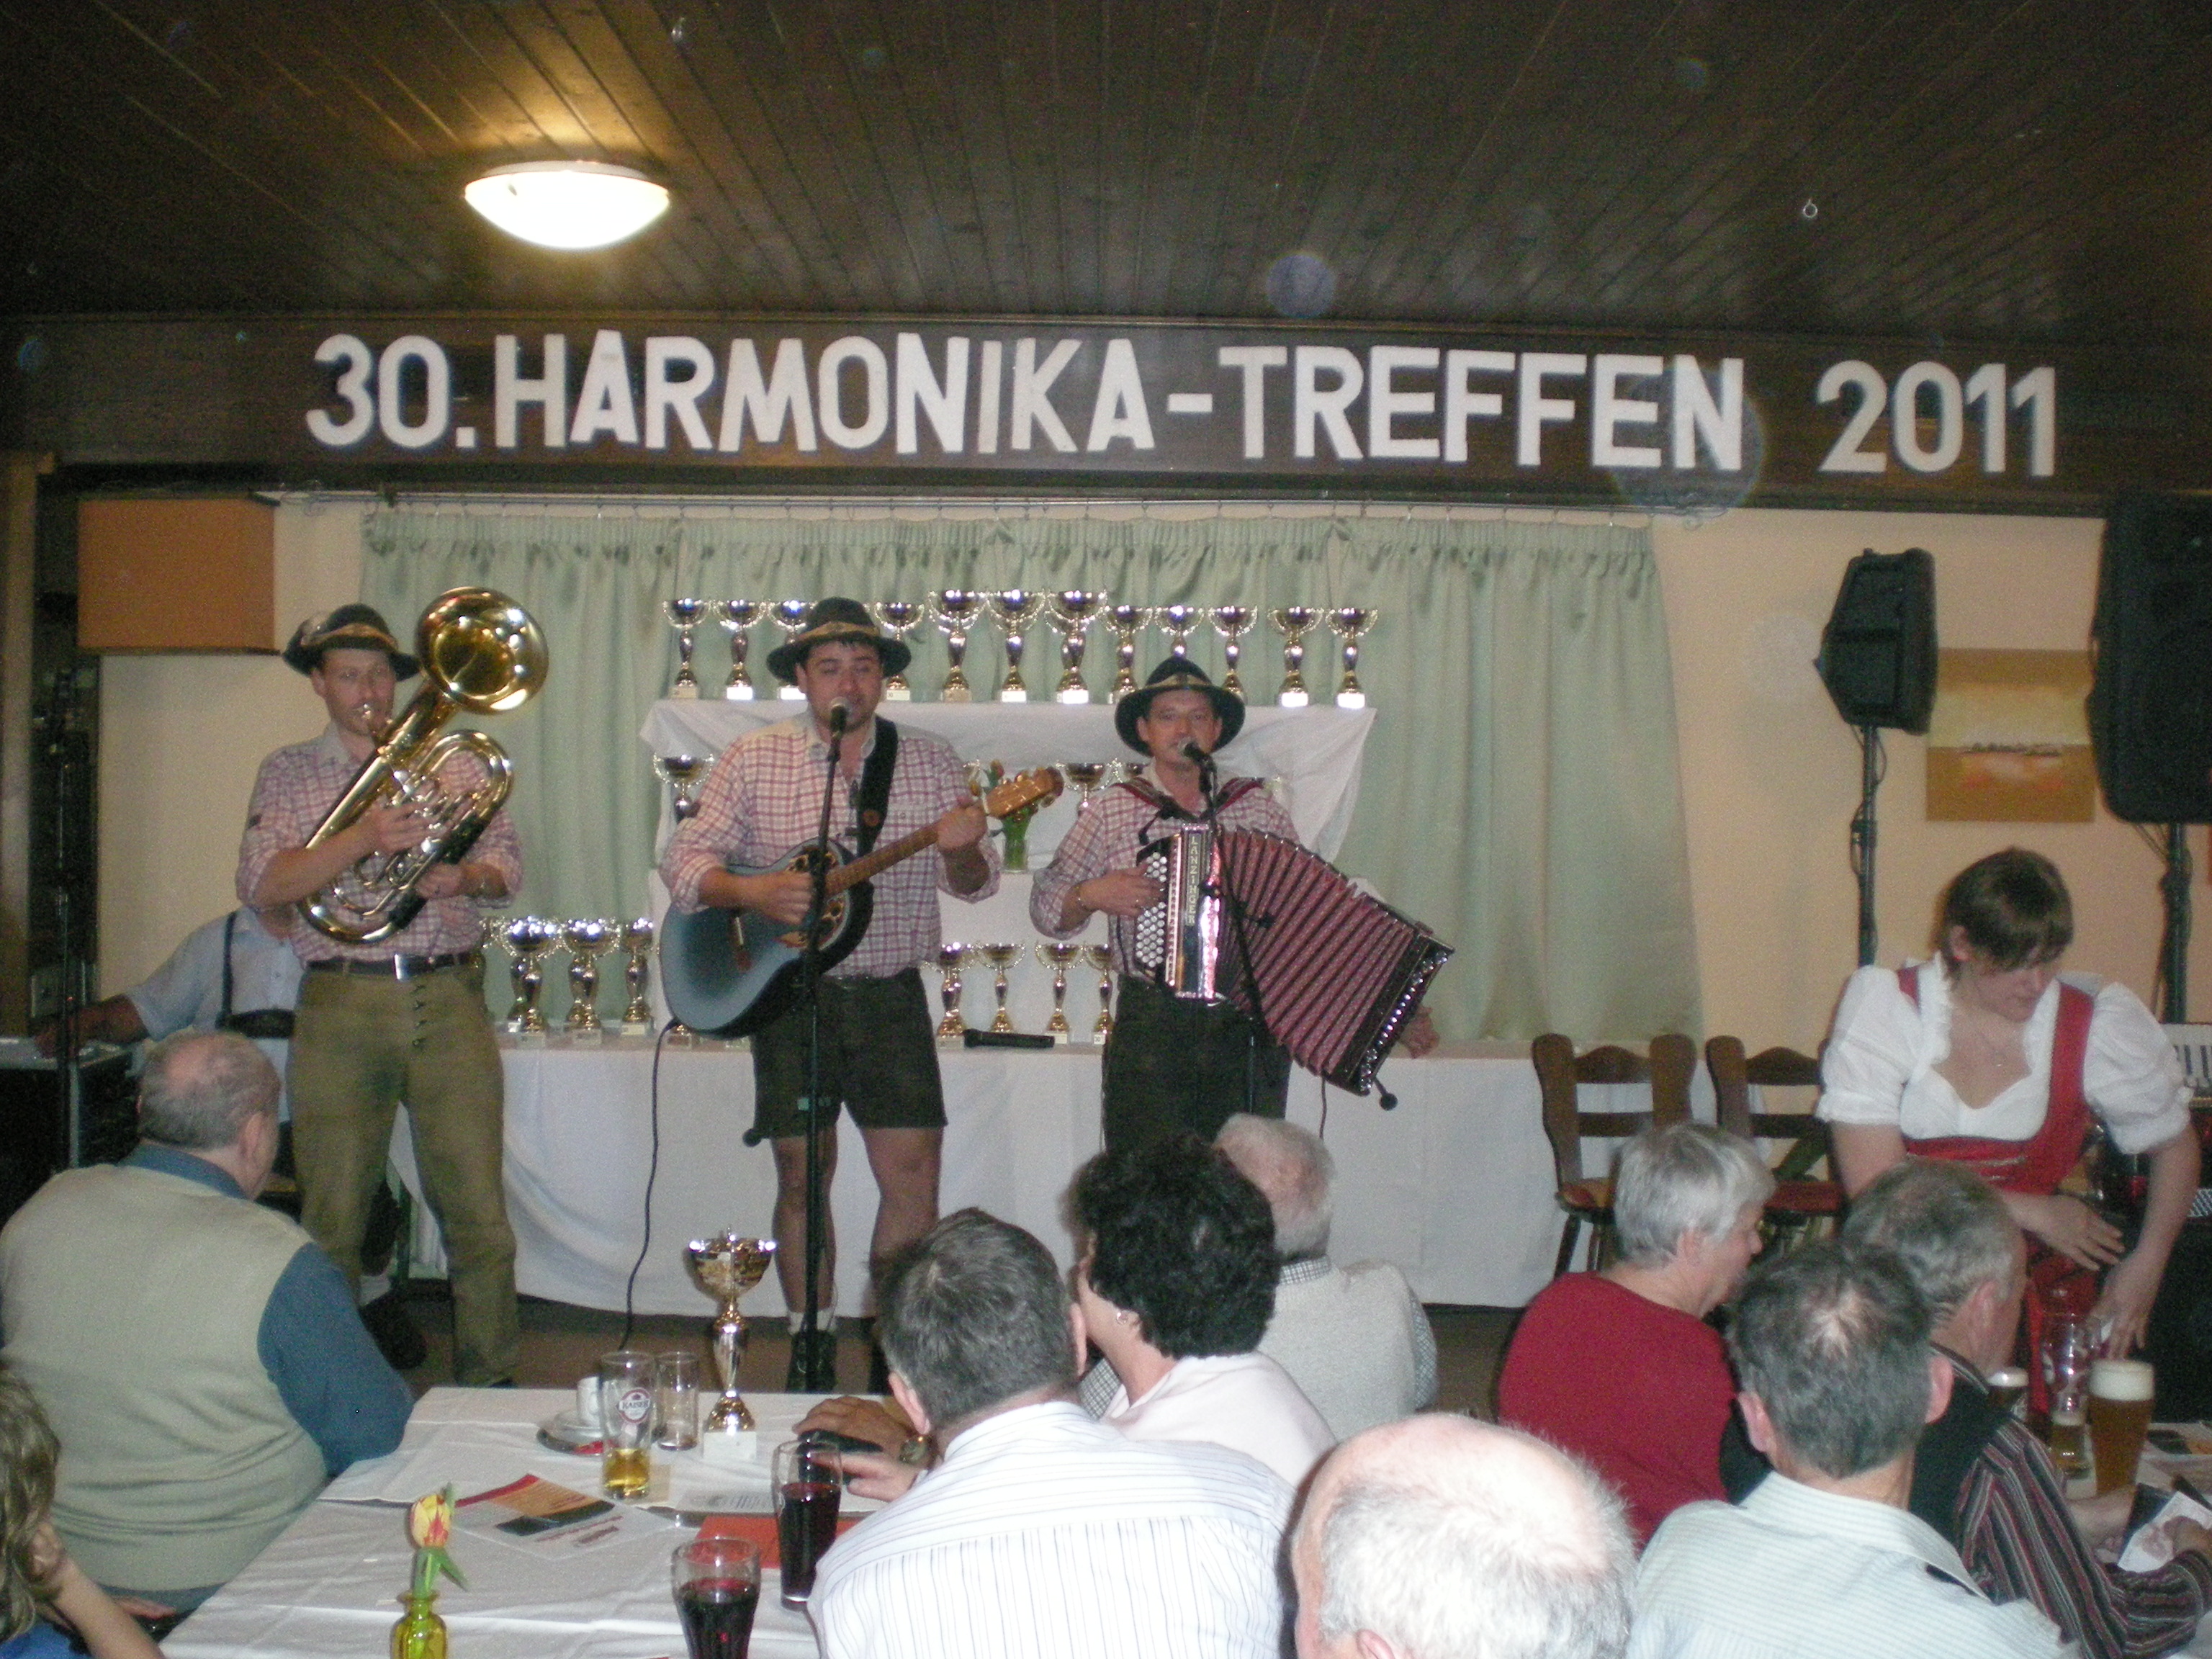 Harmonkatreffen-2011-008